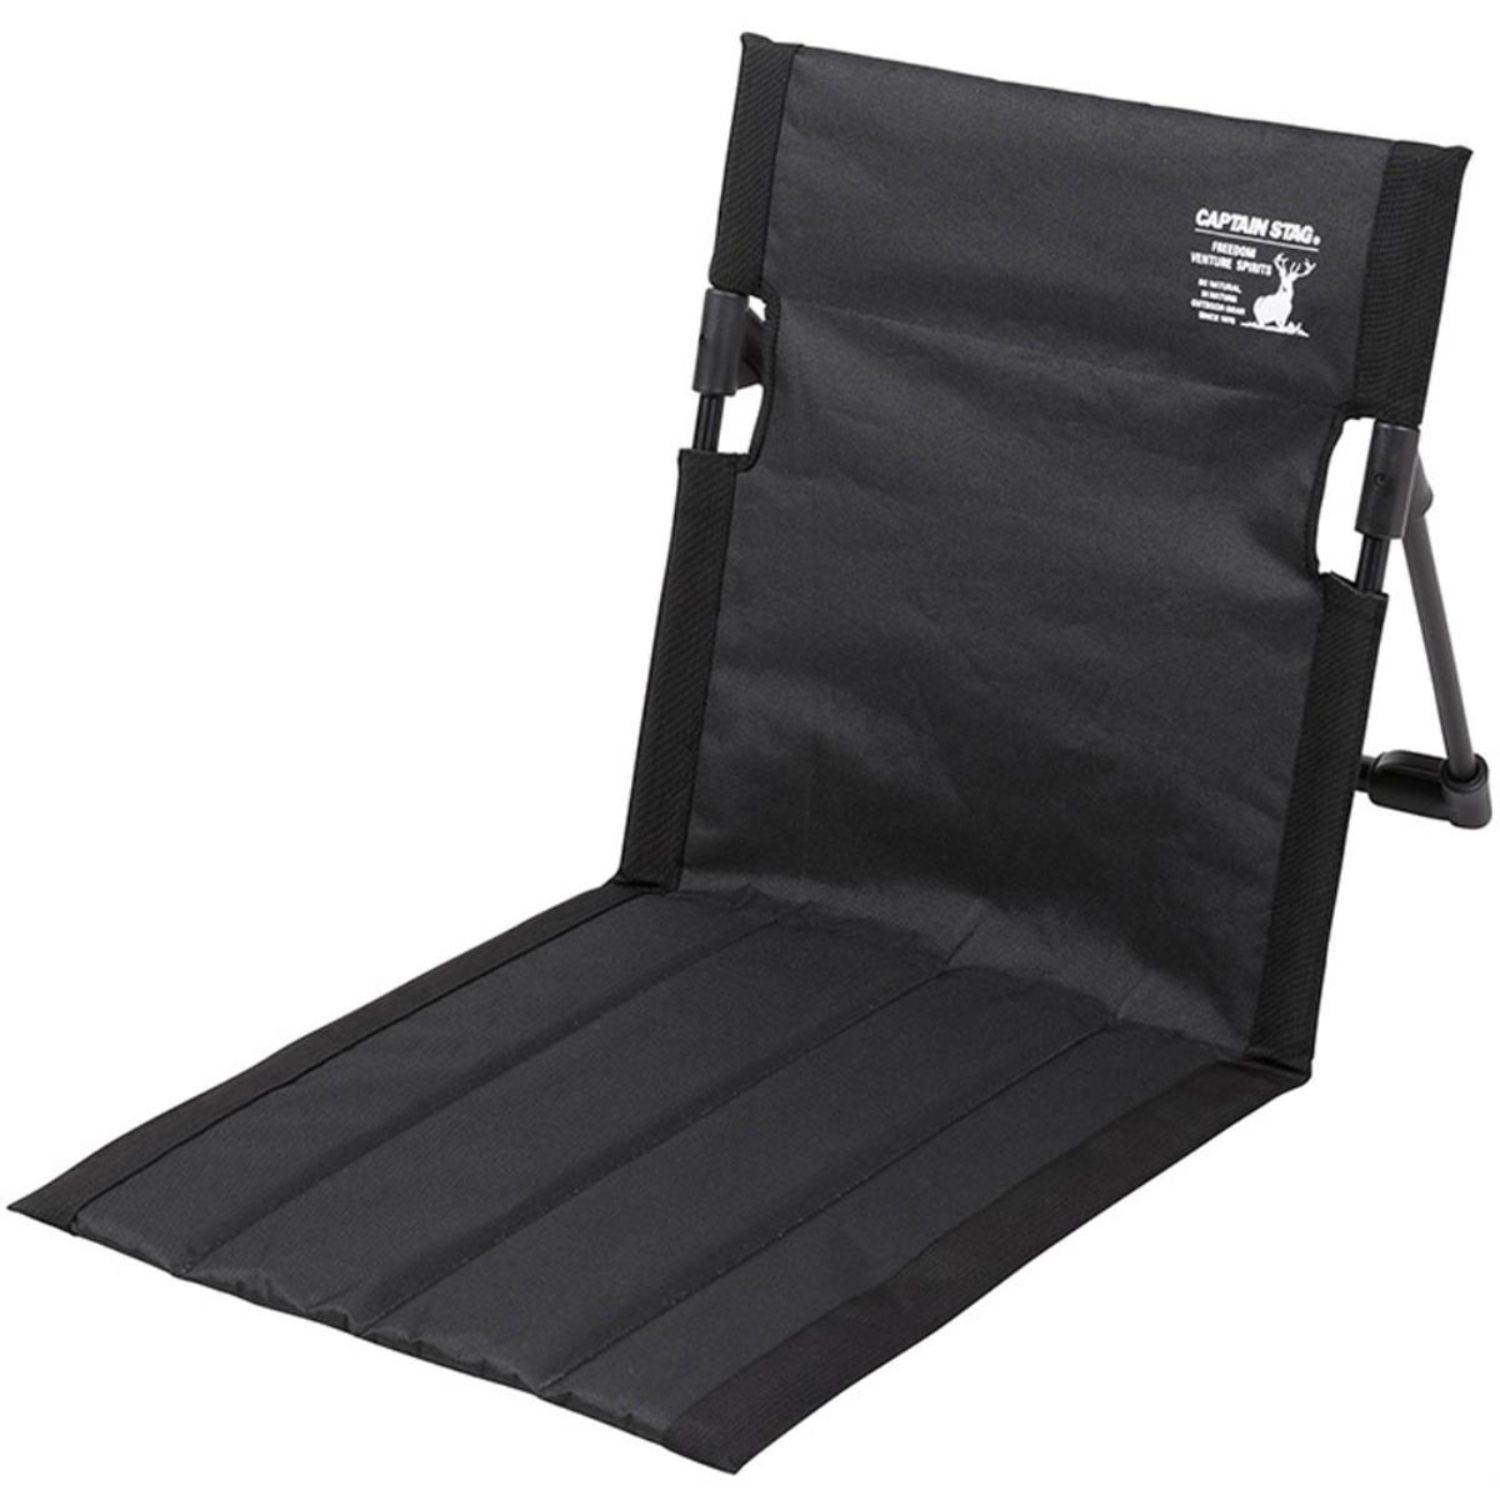 グラシアフィールド座椅子アウトドアチェアキャンプBBQバーベキューイスイス椅子コンパクト 取り寄せ品